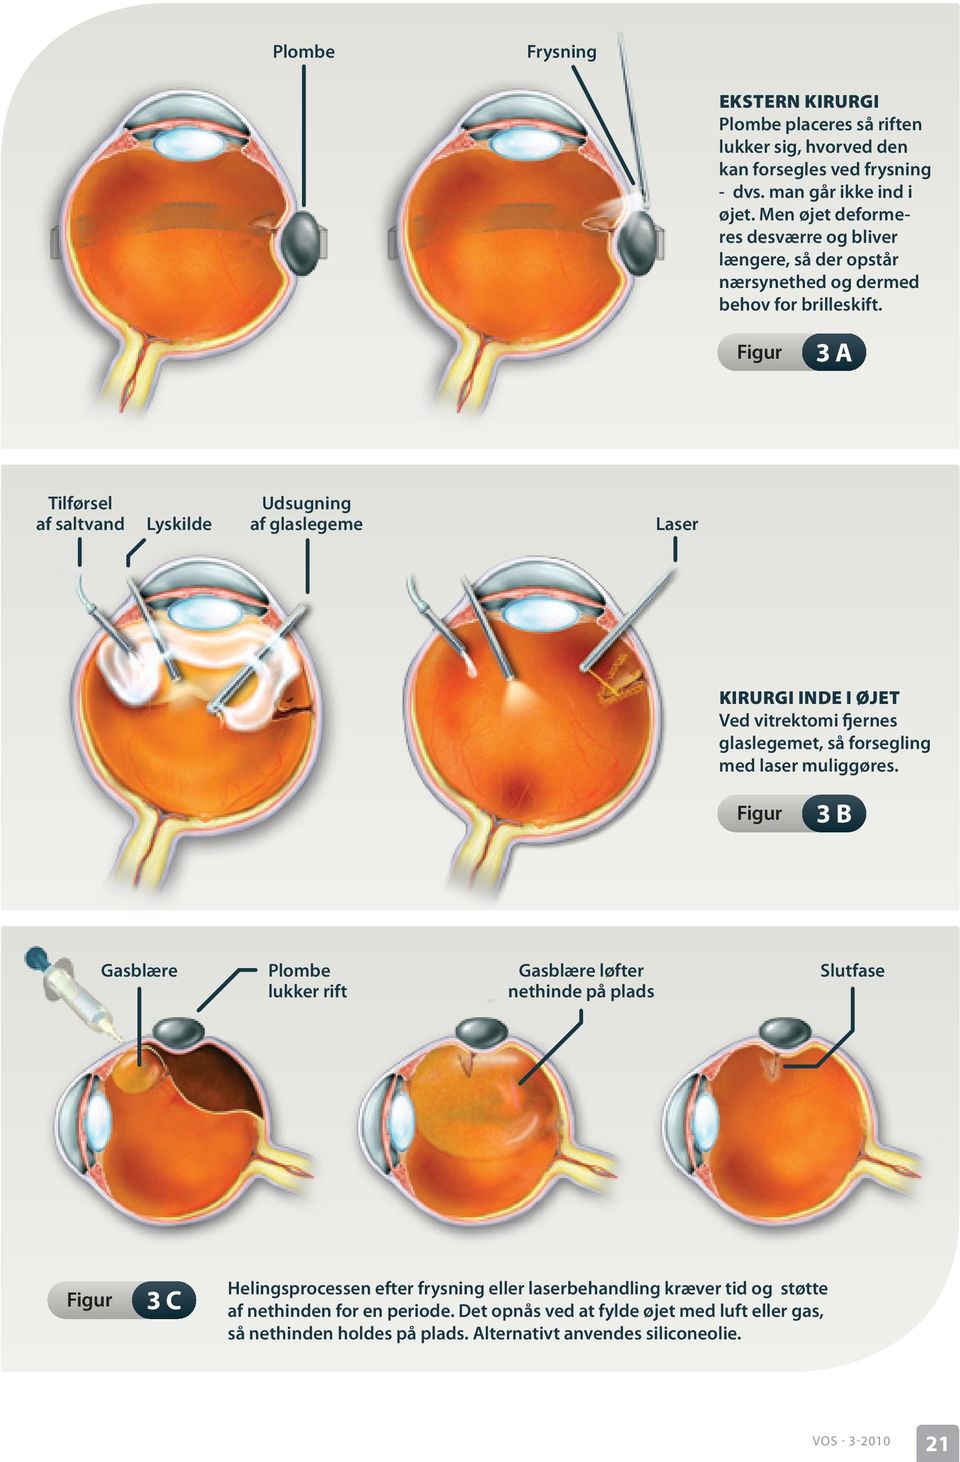 3 a Tilførsel af saltvand Lyskilde Udsugning af glaslegeme Laser Kirurgi inde i øjet Ved vitrektomi fjernes glaslegemet, så forsegling med laser muliggøres.